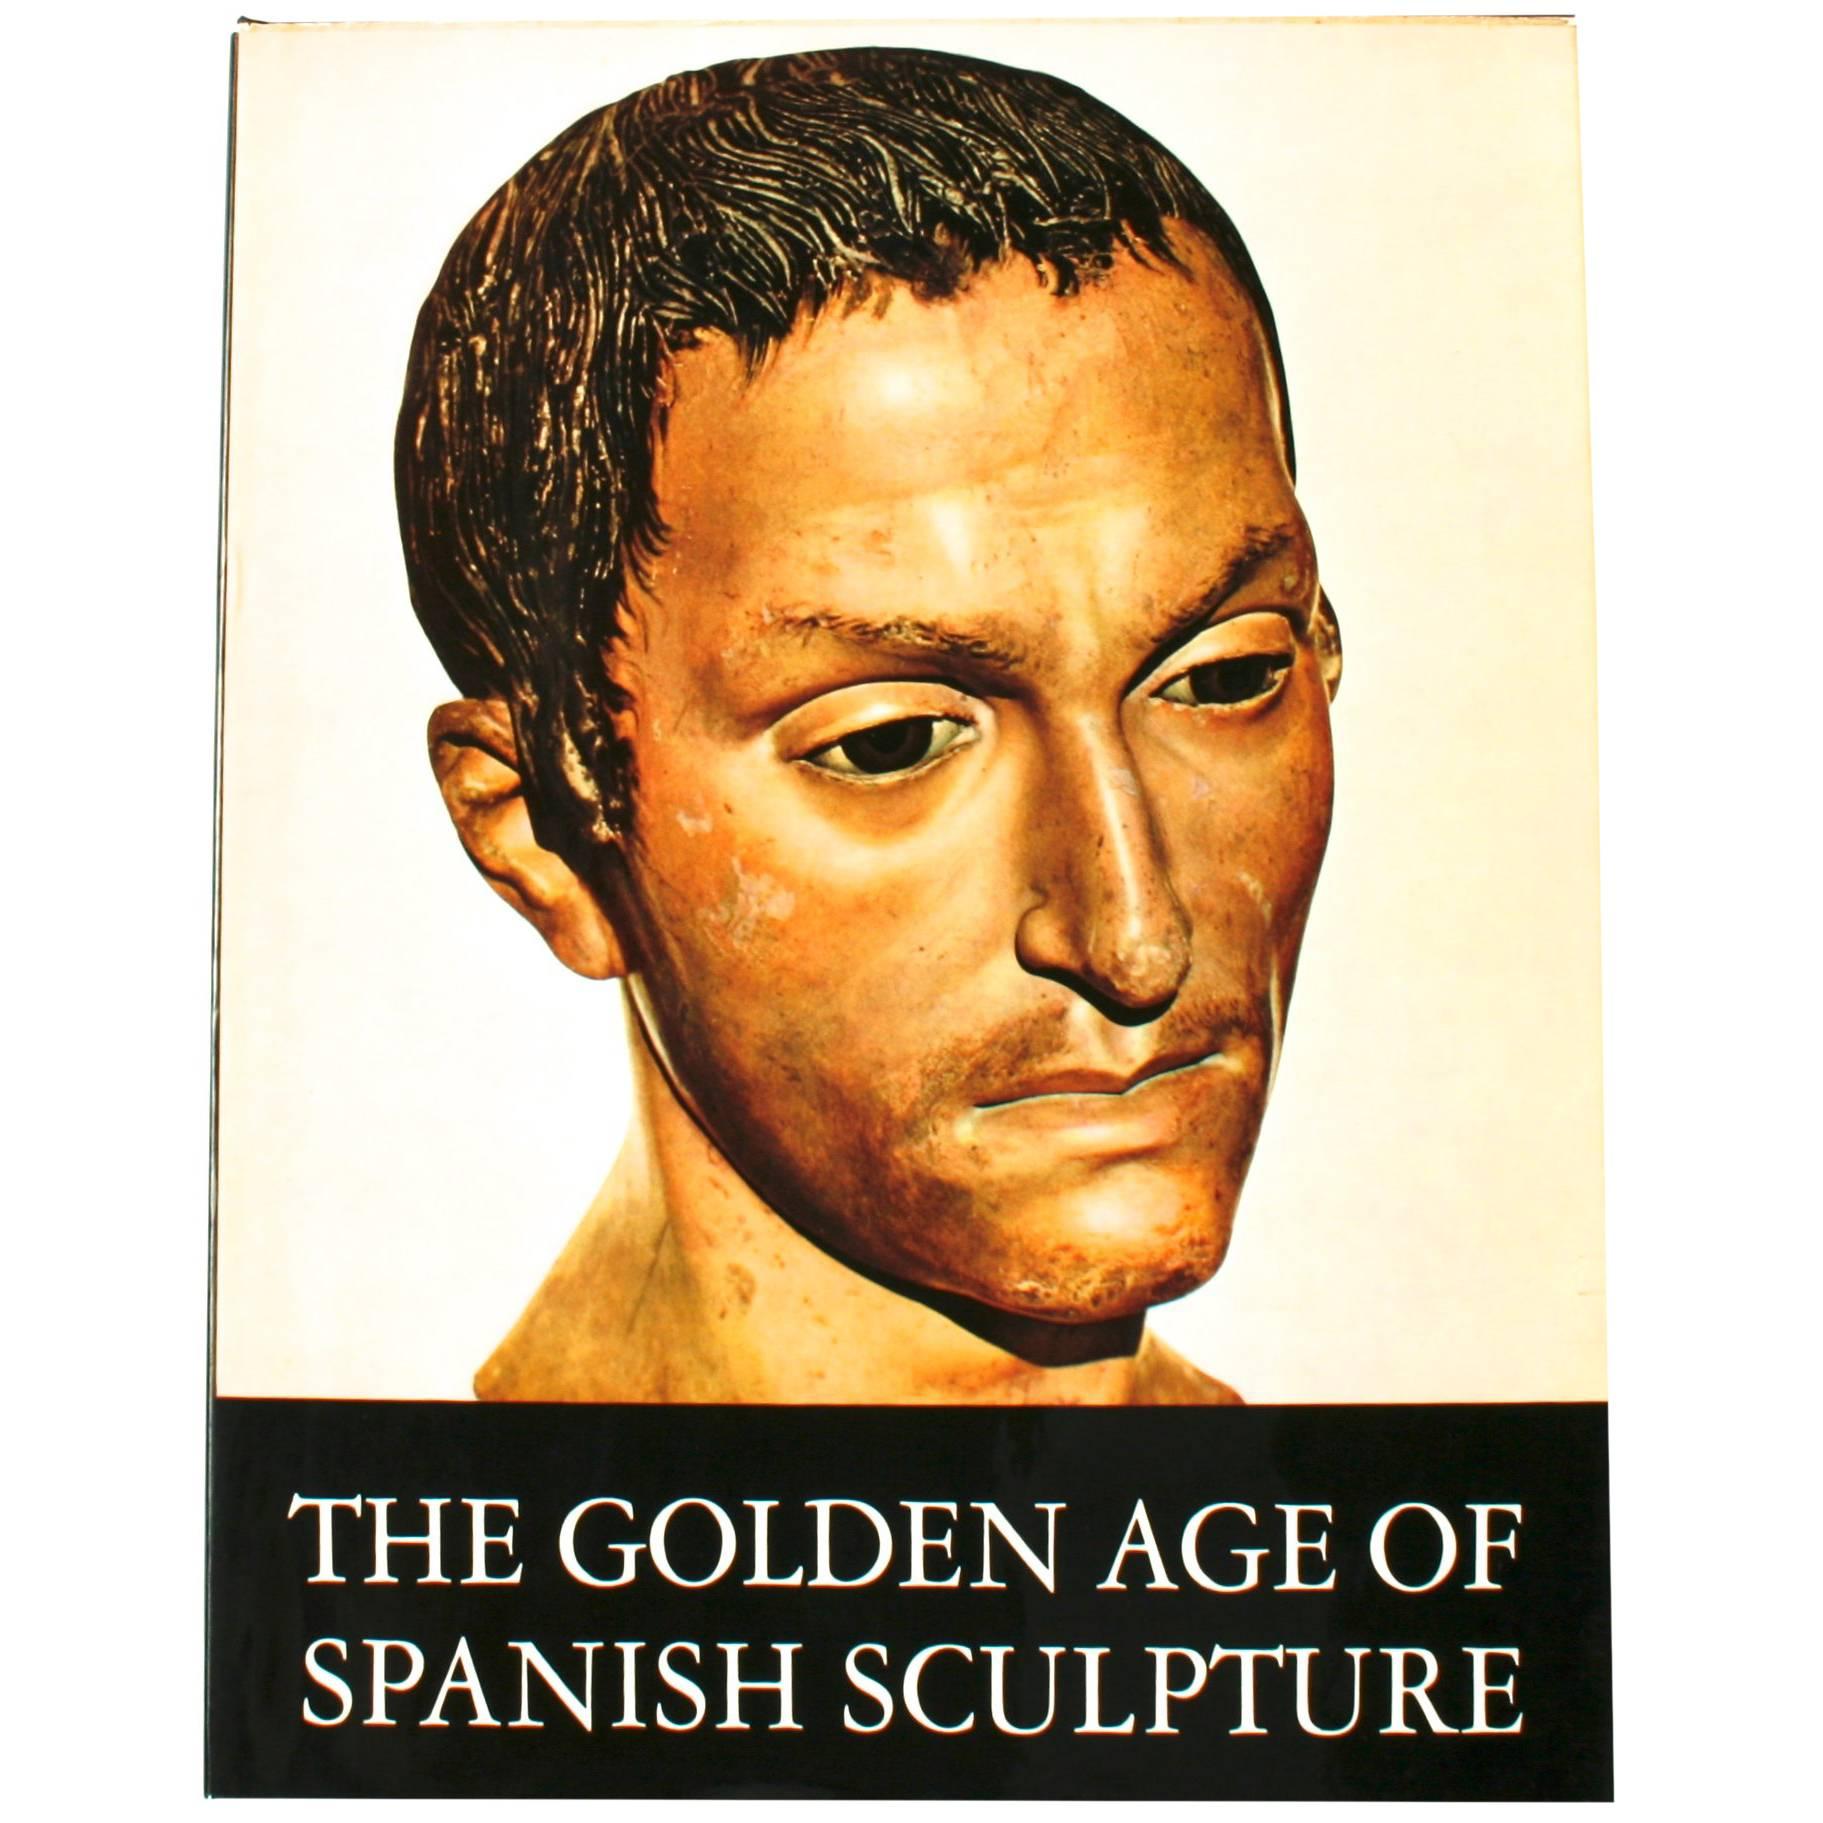 « Golden Age of Spanish Sculpture » (L'âge d'or de la sculpture espagnole) de Manuel Gmez Moreno, première édition